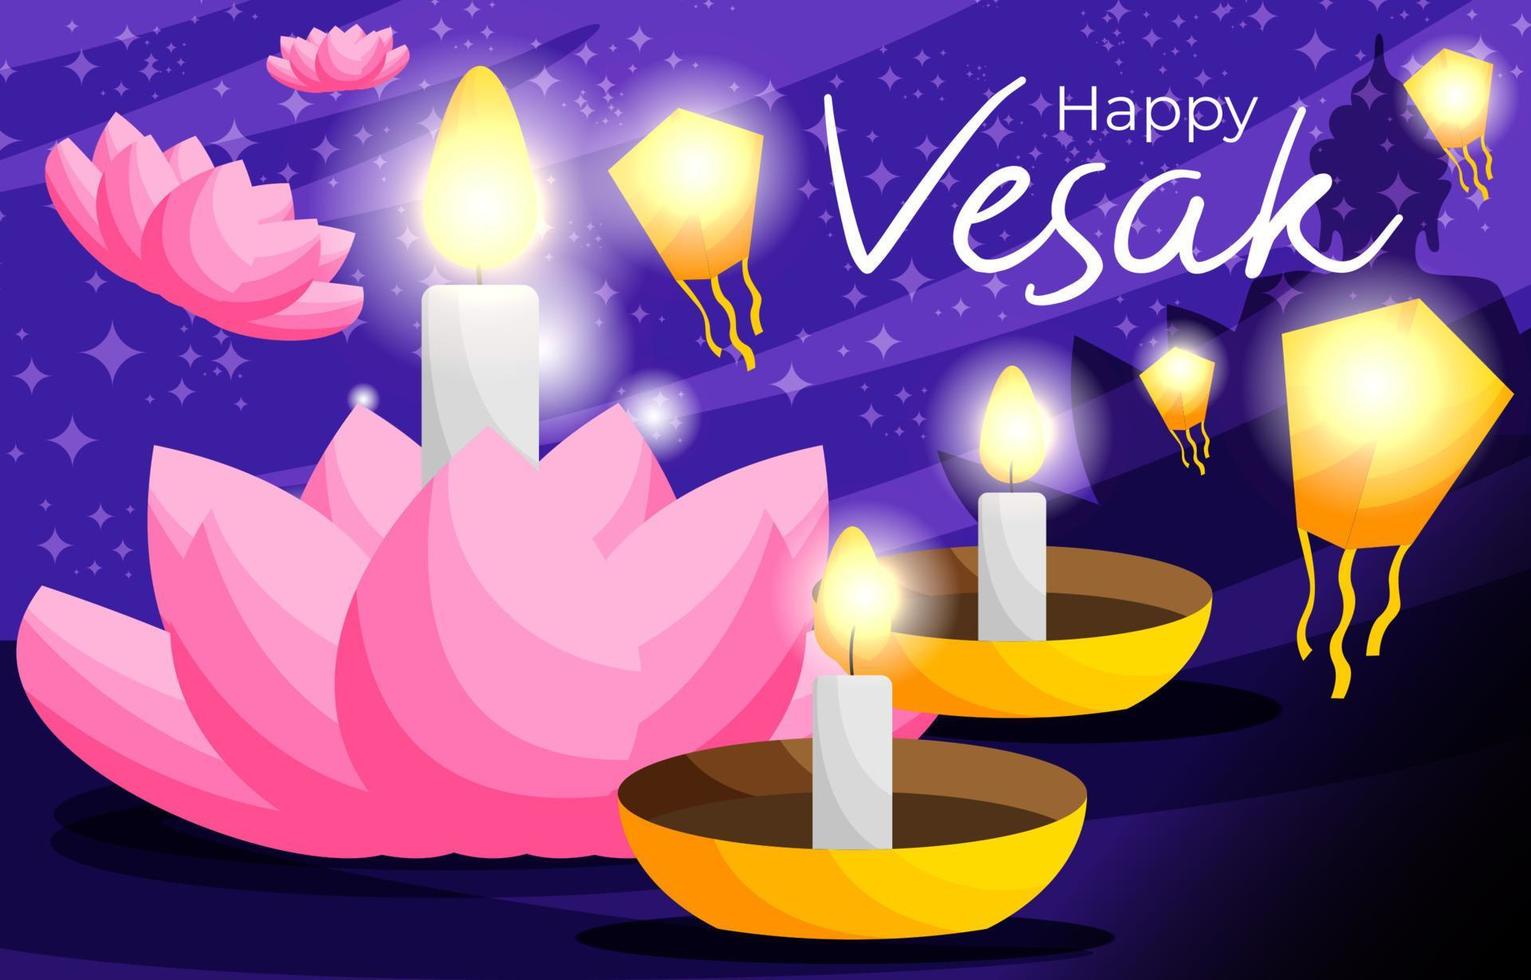 Happy Vesak Day with Lotus Flower 6921839 Vector Art at Vecteezy